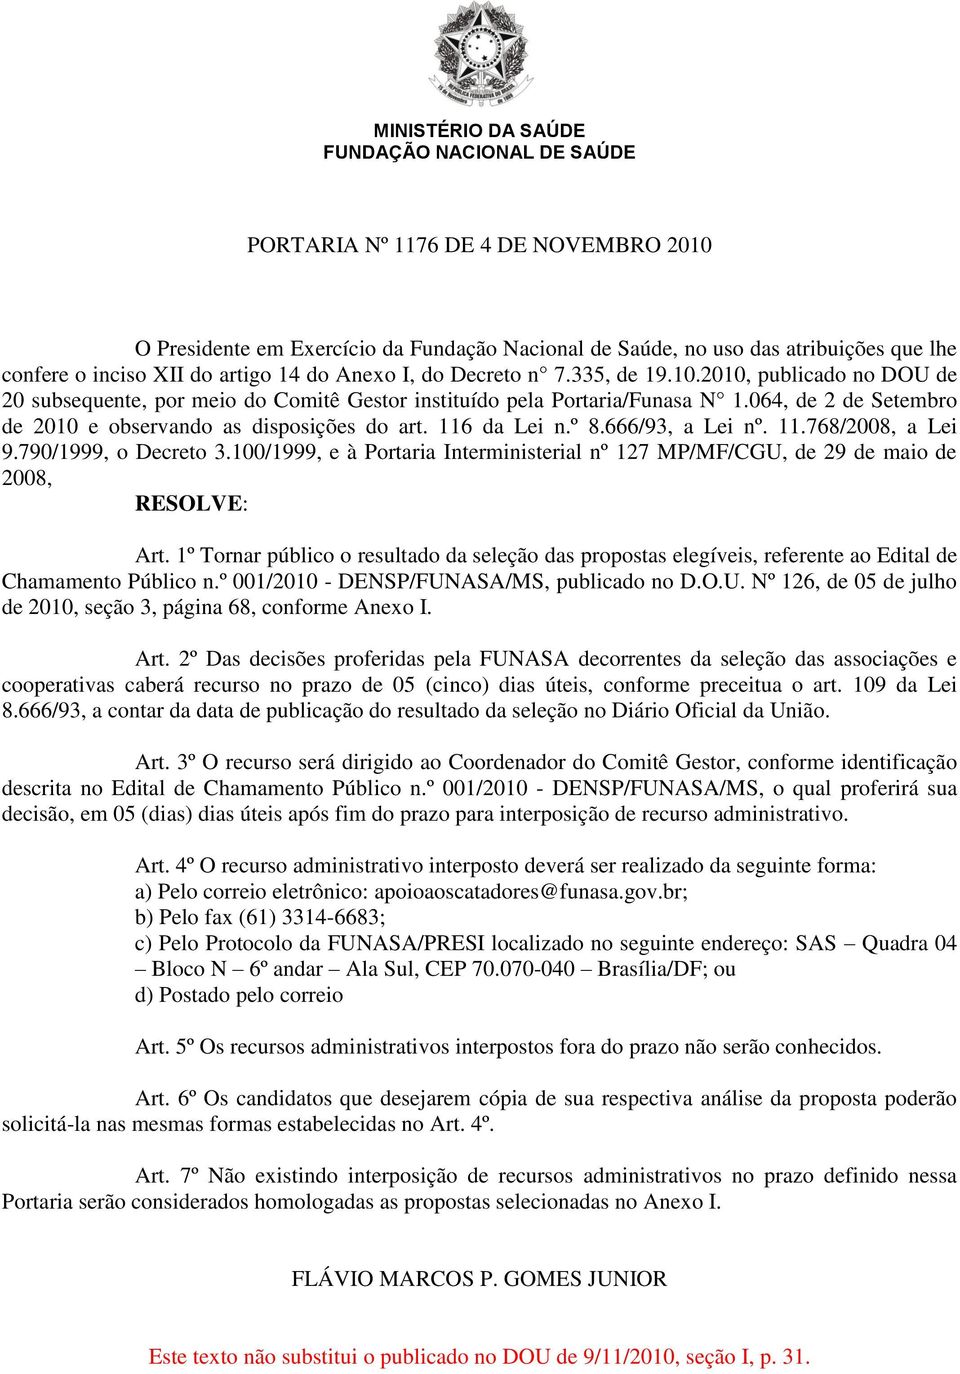 064, de 2 de Setembro de 2010 e observando as disposições do art. 116 da Lei n.º 8.666/93, a Lei nº. 11.768/2008, a Lei 9.790/1999, o Decreto 3.